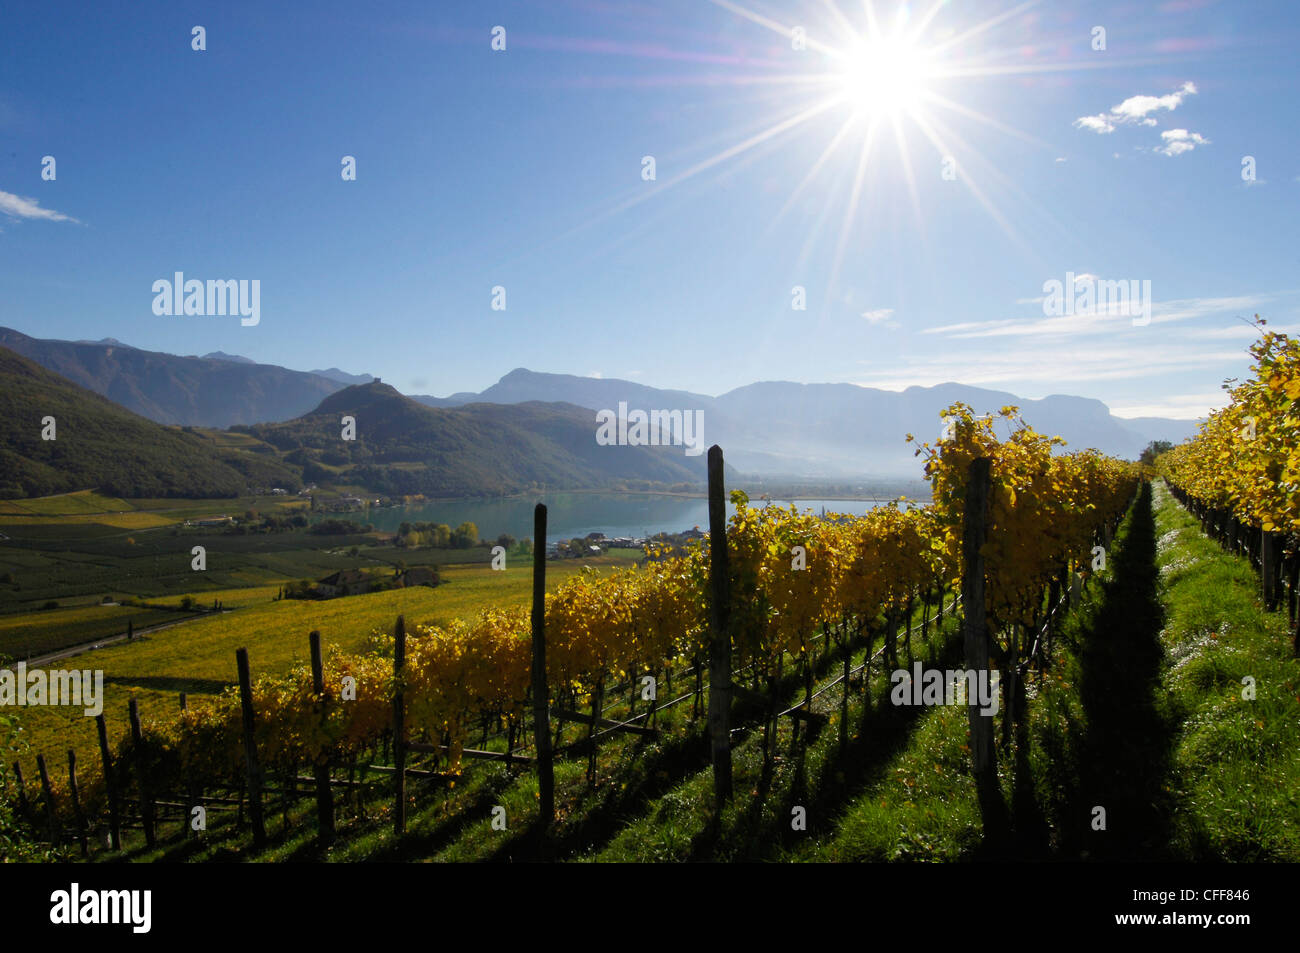 Vigneto al lago di Caldaro nella luce del sole, Kaltern an der Weinstrasse, Sud Tirolo, Alto Adige, Italia, Europa Foto Stock